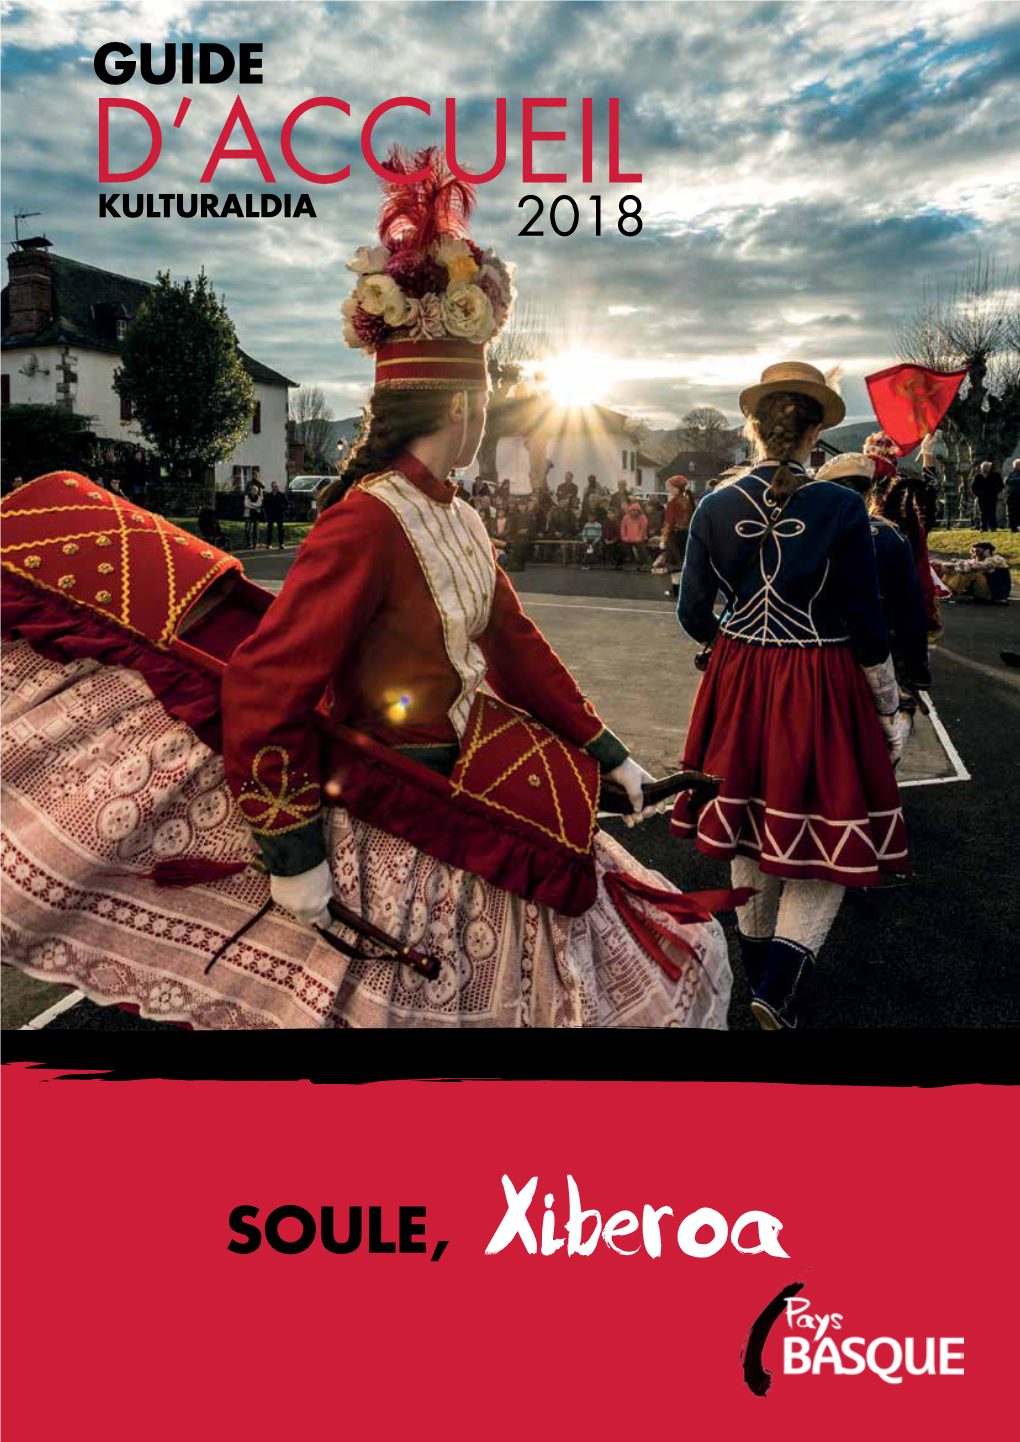 SOULE, Xiberoa La Soule Est Une Province Du Pays Basque, Peuplée De 14 000 Habitants Répartis Sur 36 Communes